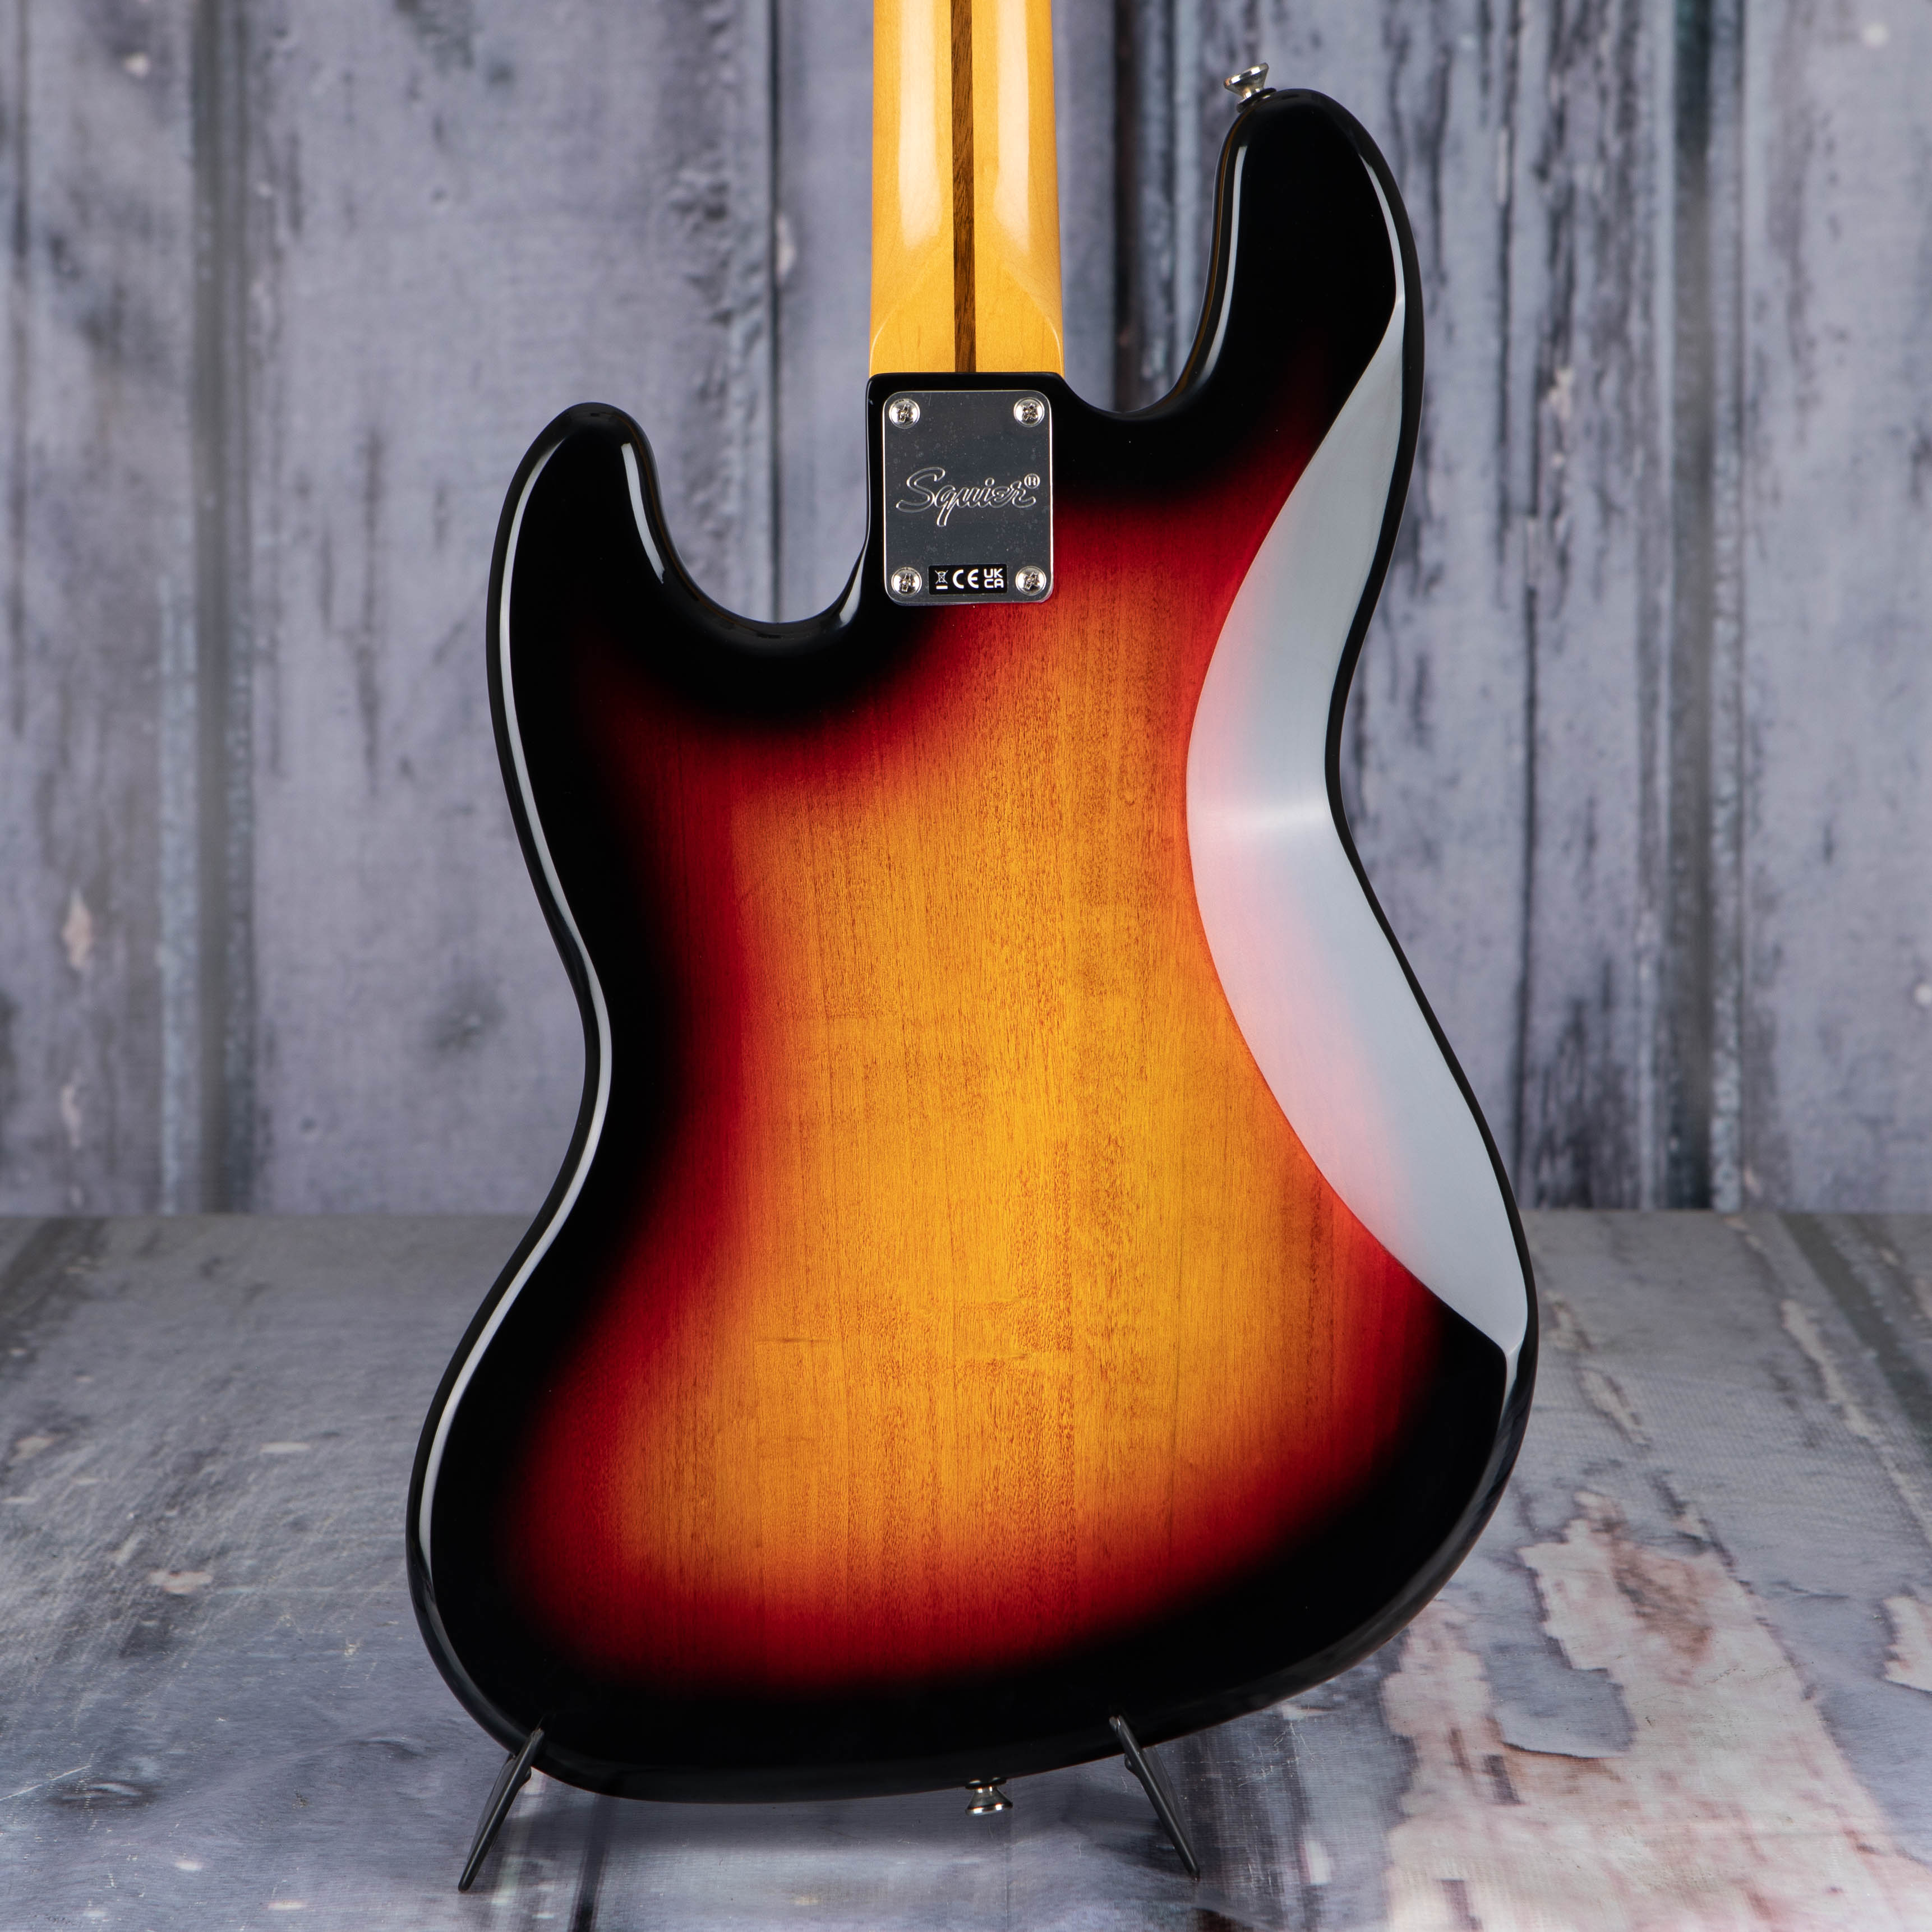 Squier Classic Vibe '70s Jazz Bass Guitar, 3-Color Sunburst, back closeup